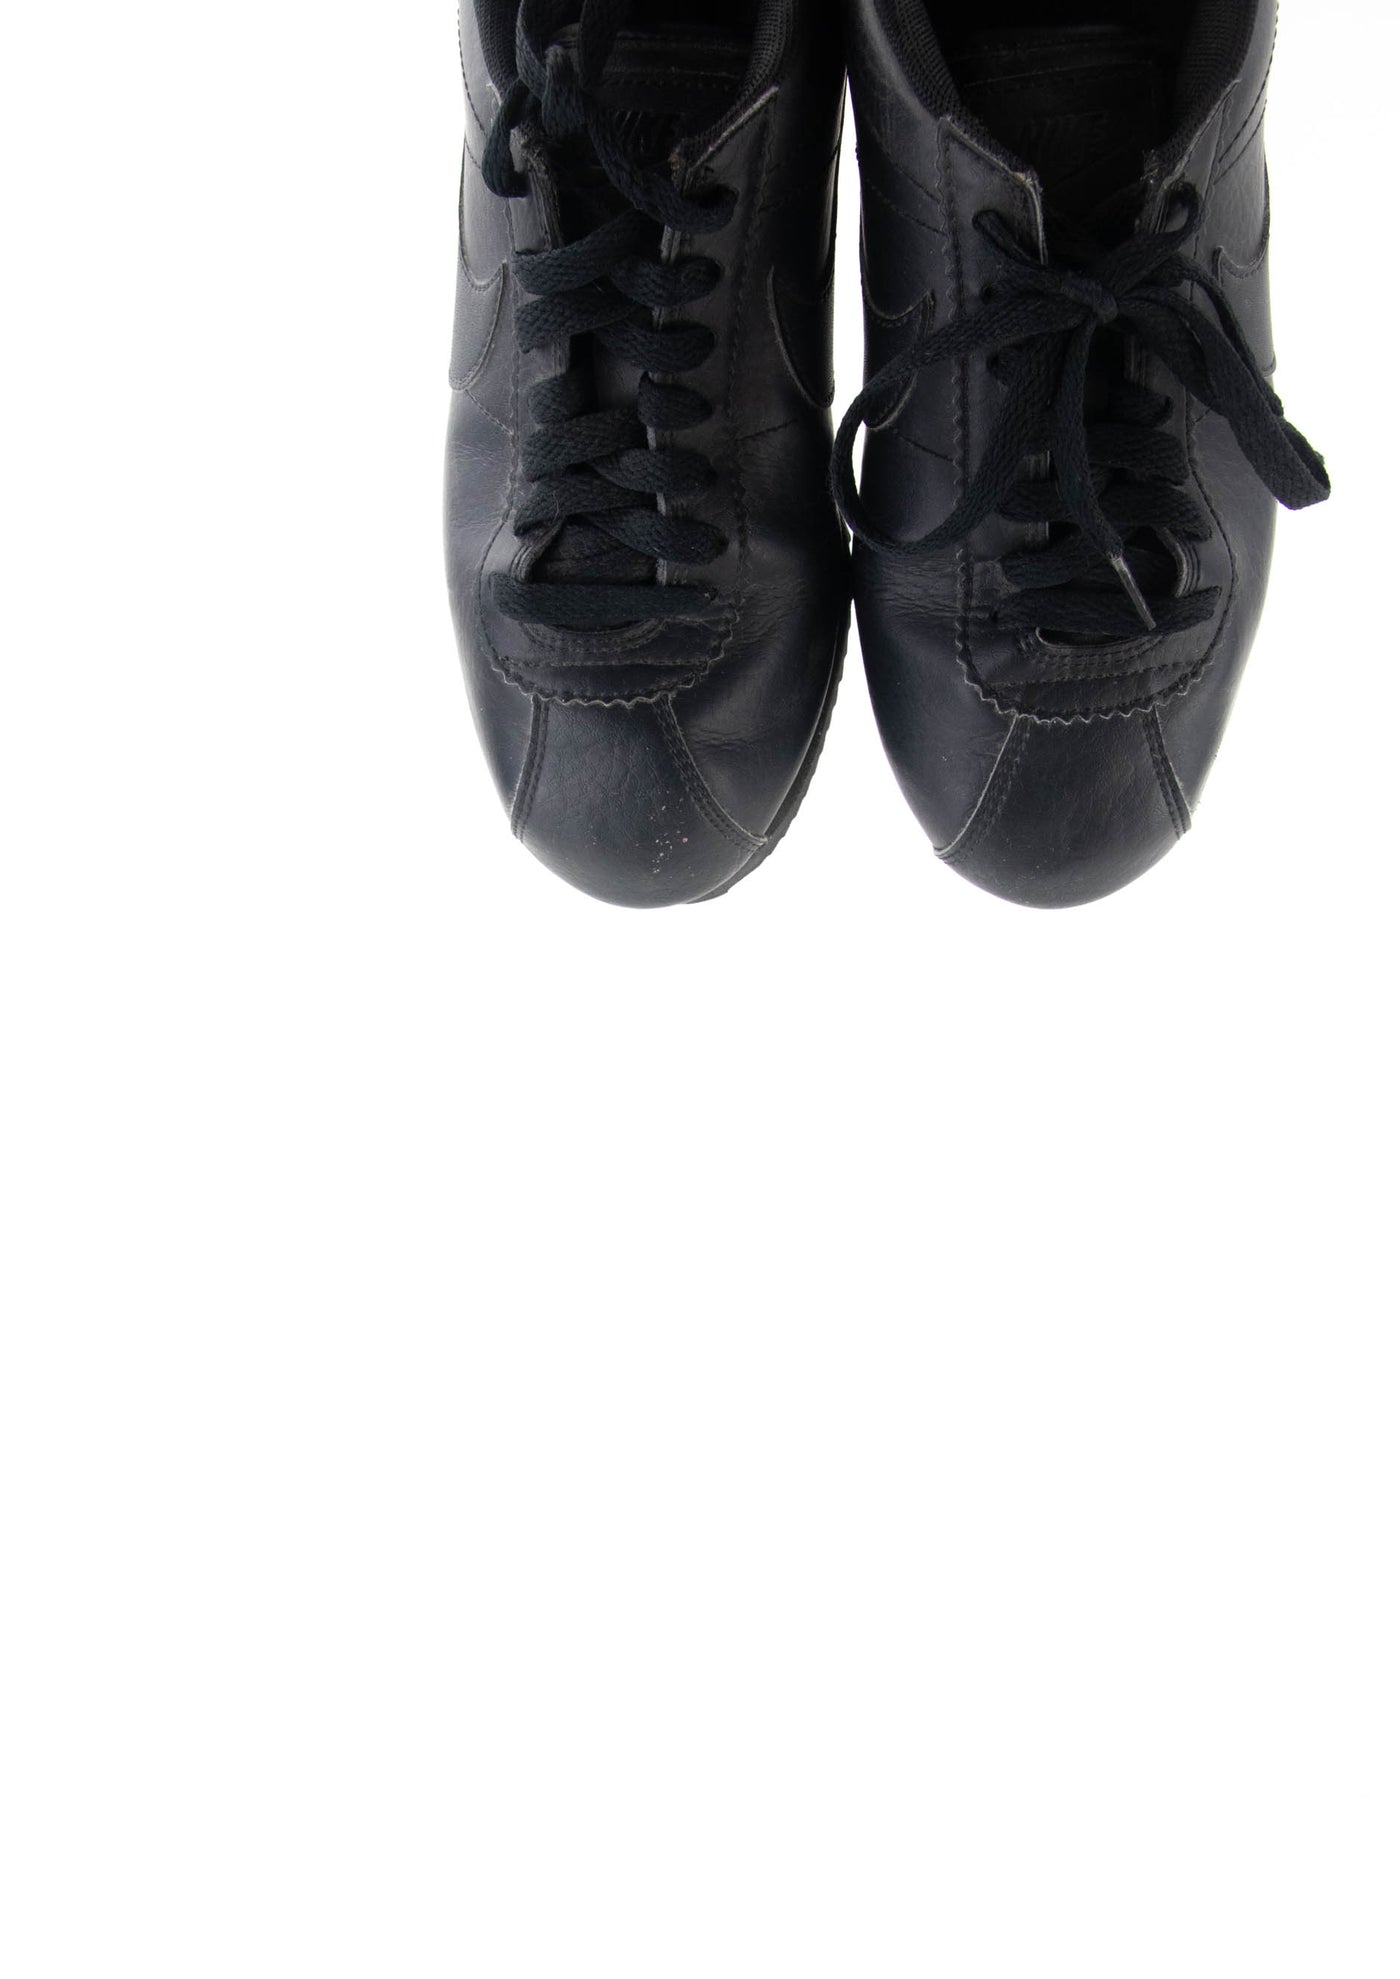 Zapatillas clasicas negras de Nike